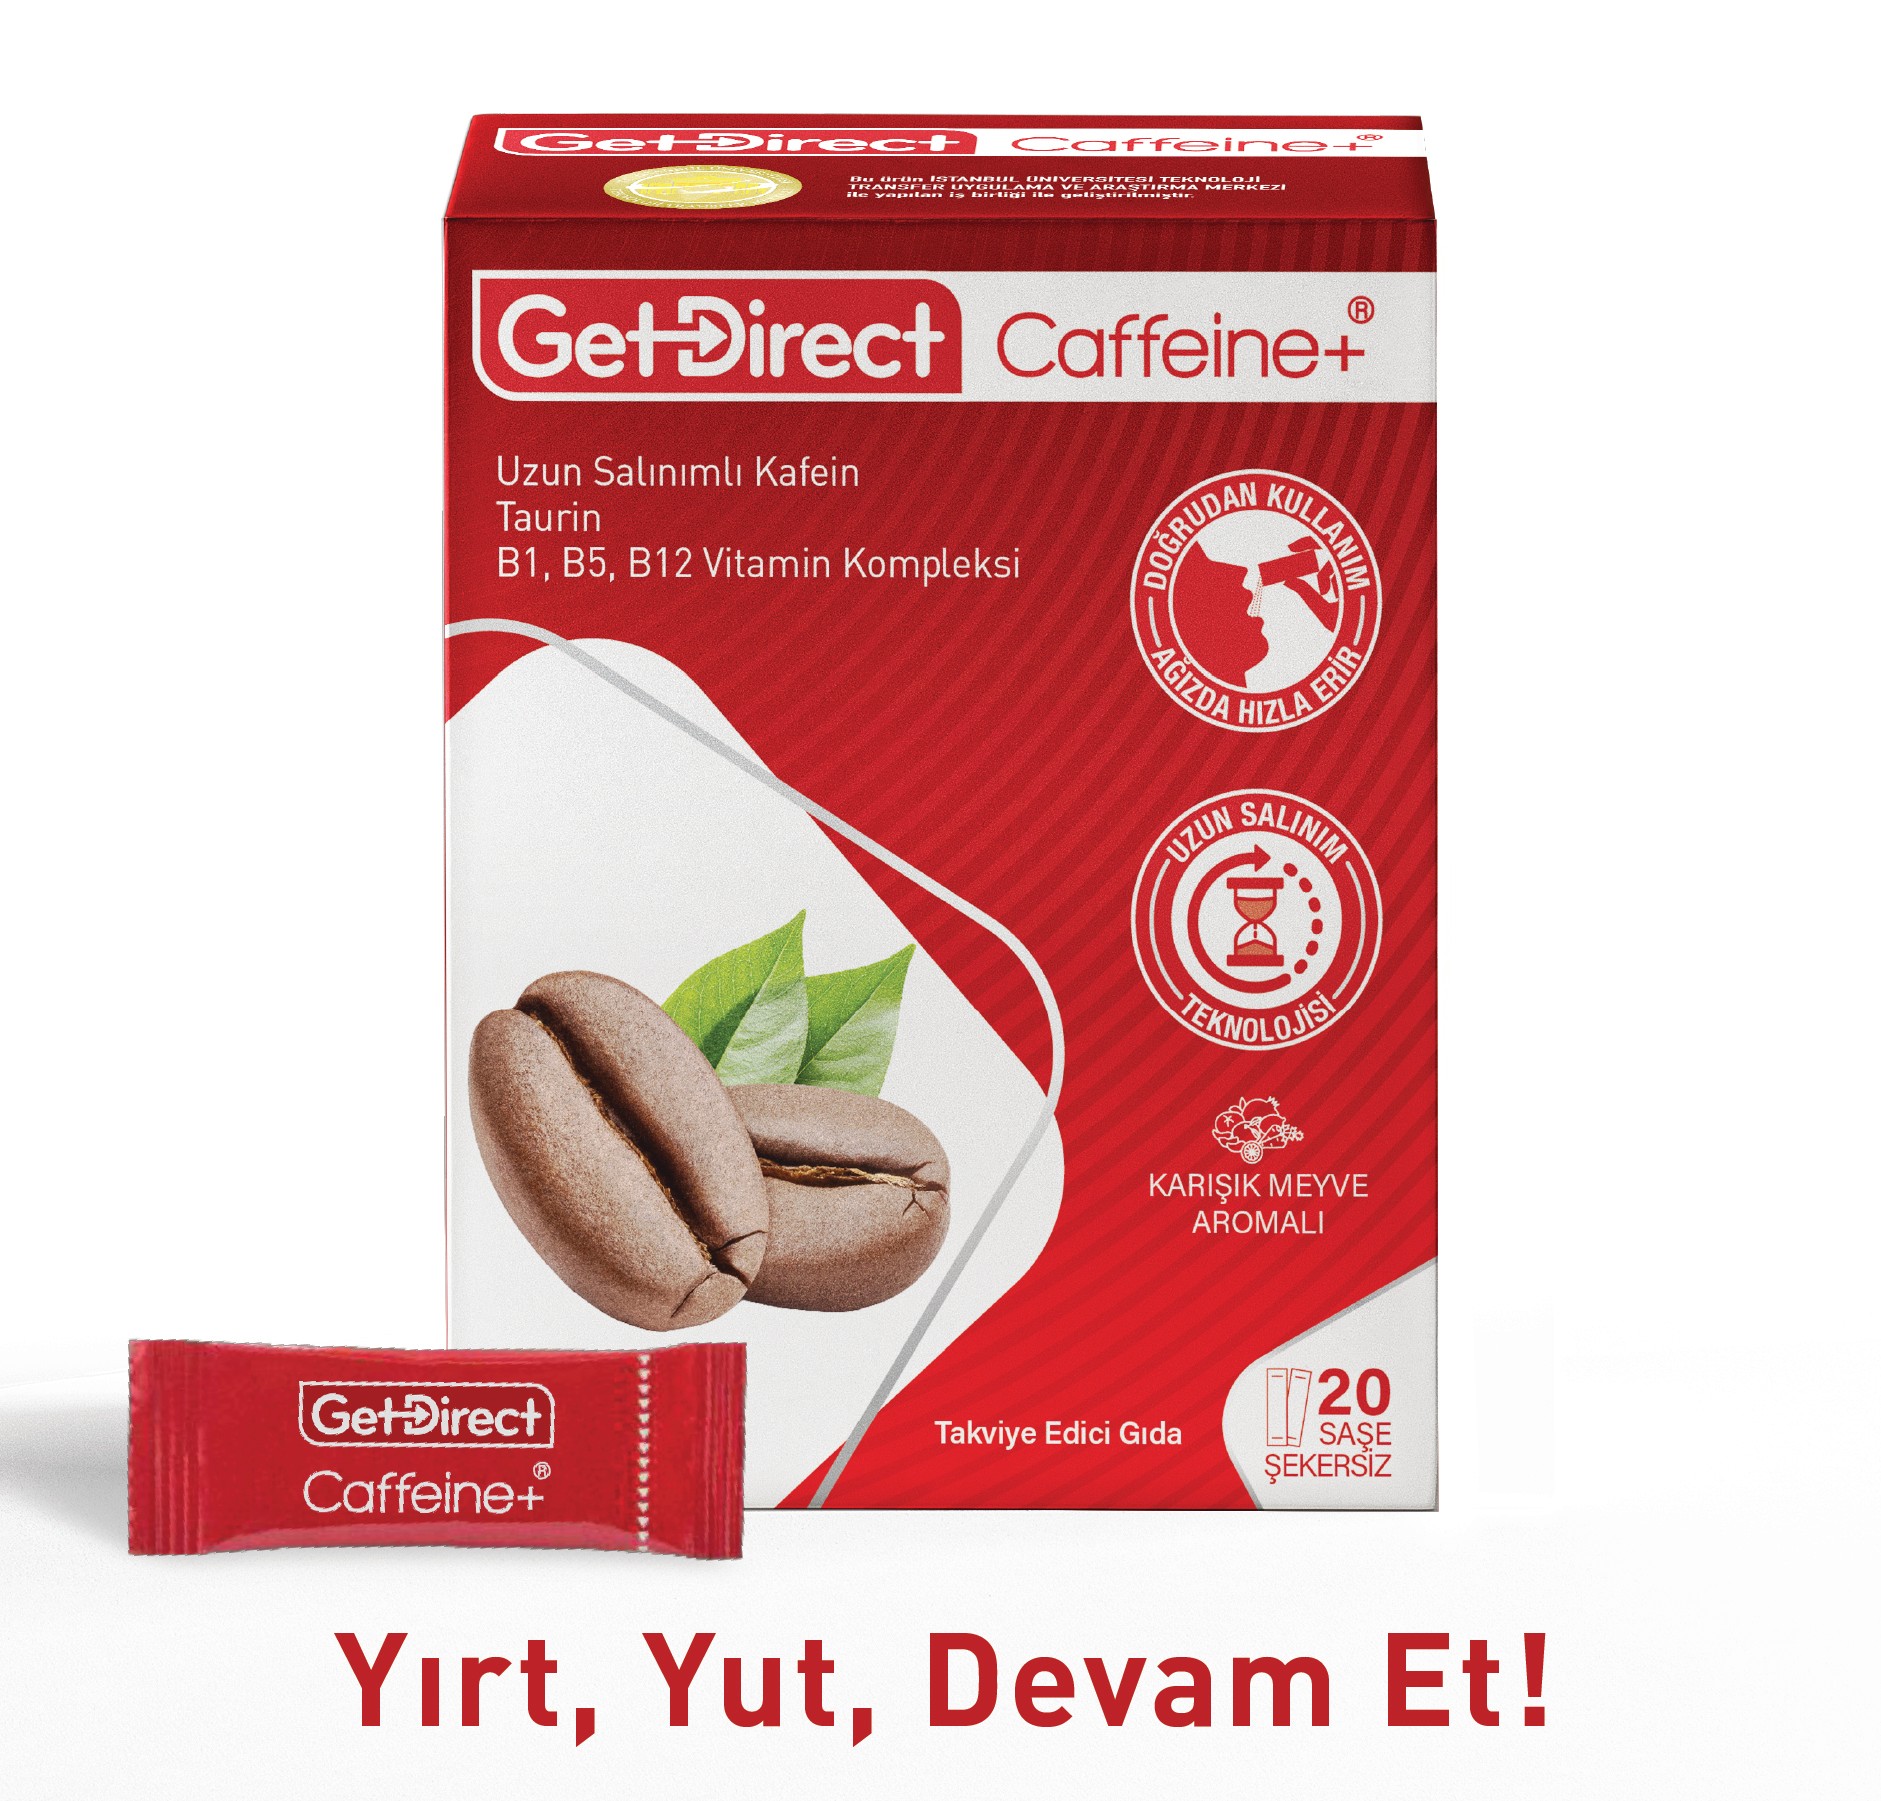 GetDirect Caffeine+ Uzun Salınımlı Kafein, Taurin ve Vitamin B Kompleksi  İçeren Takviye Edici Gıda